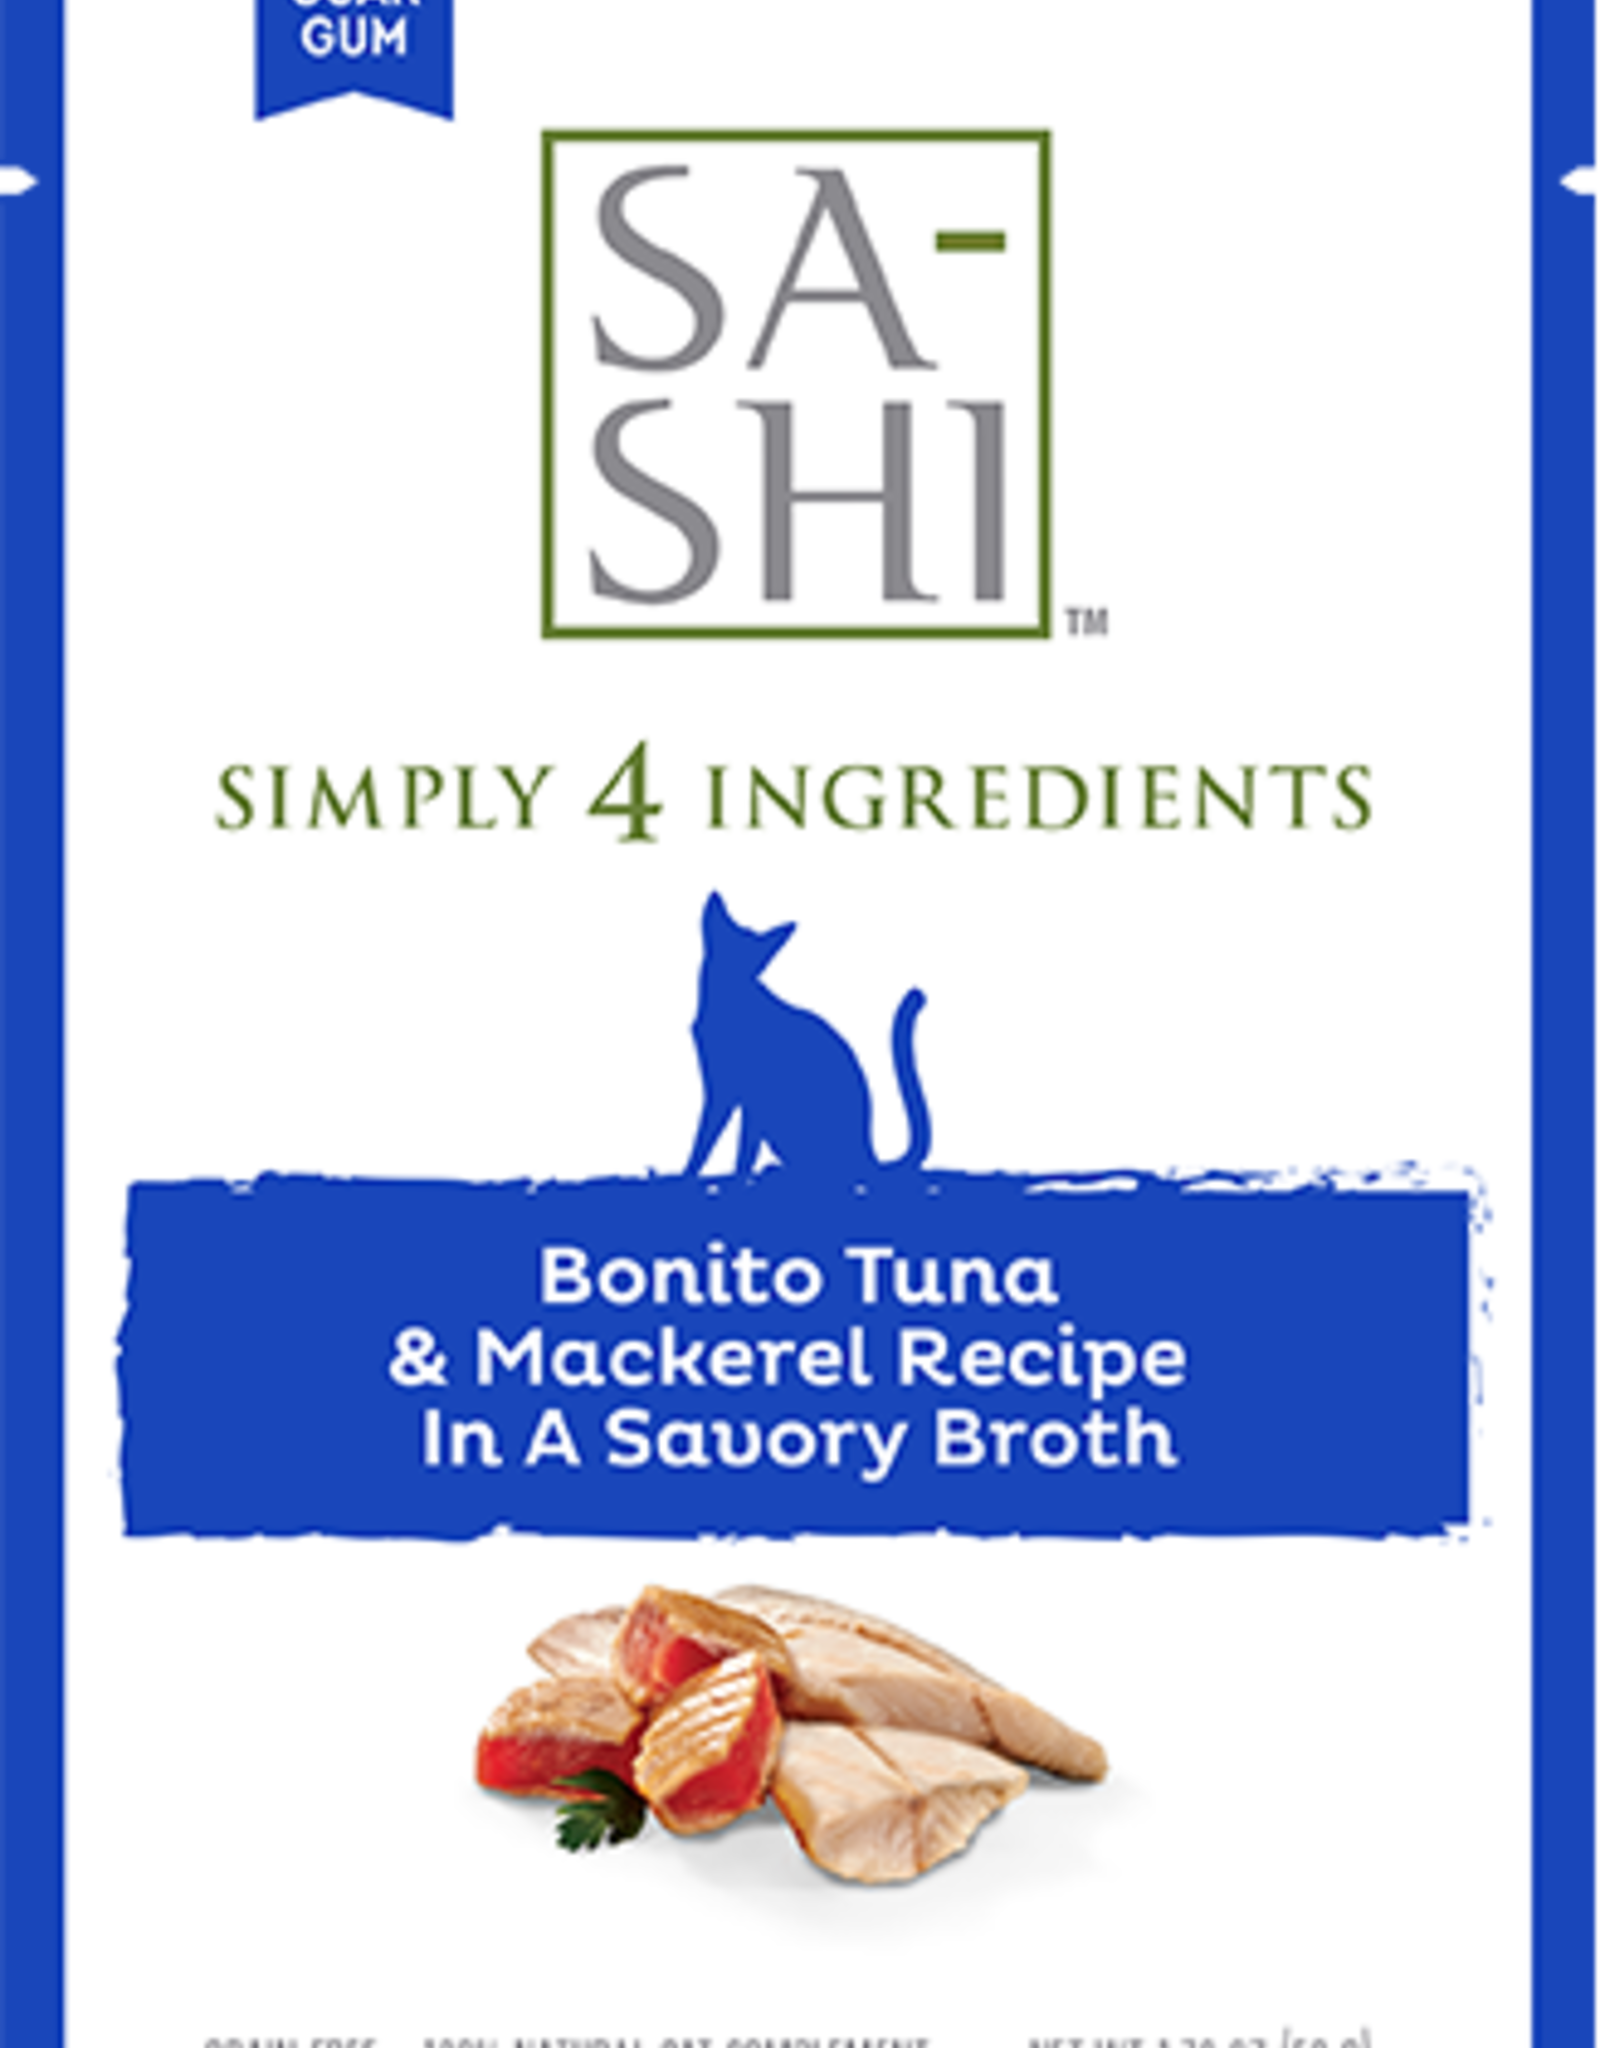 SA-SHI Bonita Tuna & Mackerel